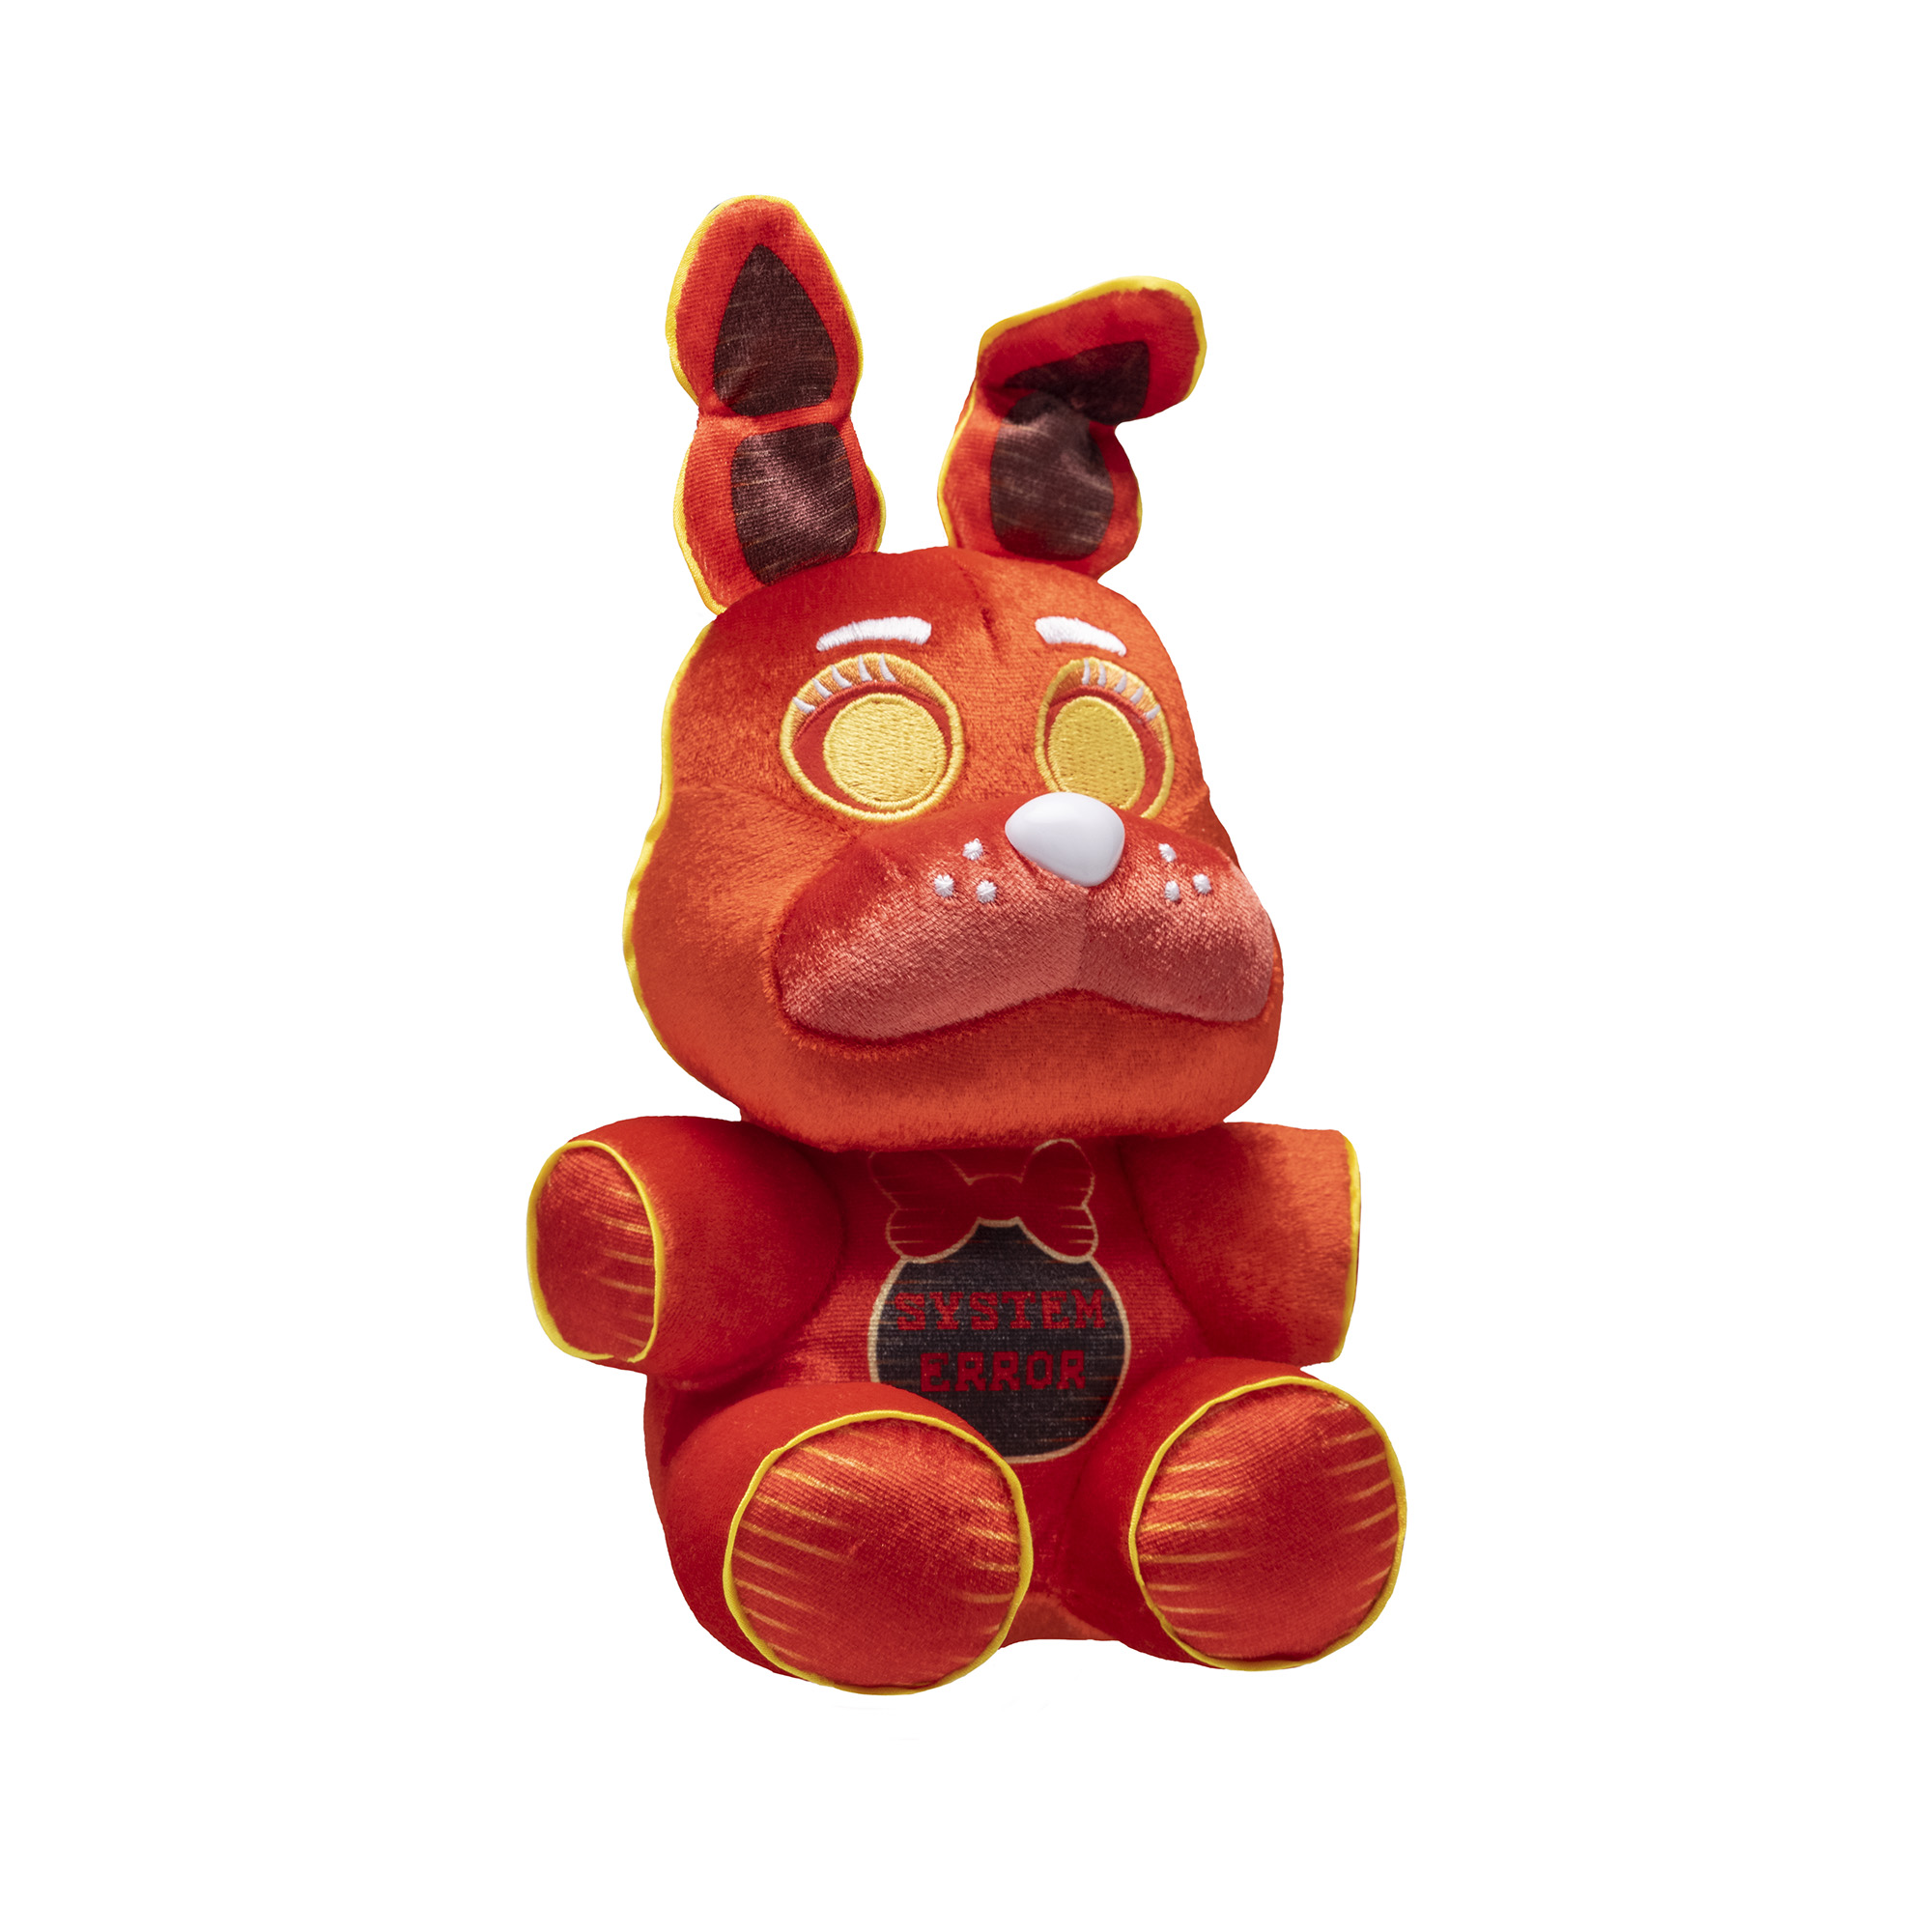 Funko Mini Plush Five Nights at Freddy's™  stuffed animal 8in